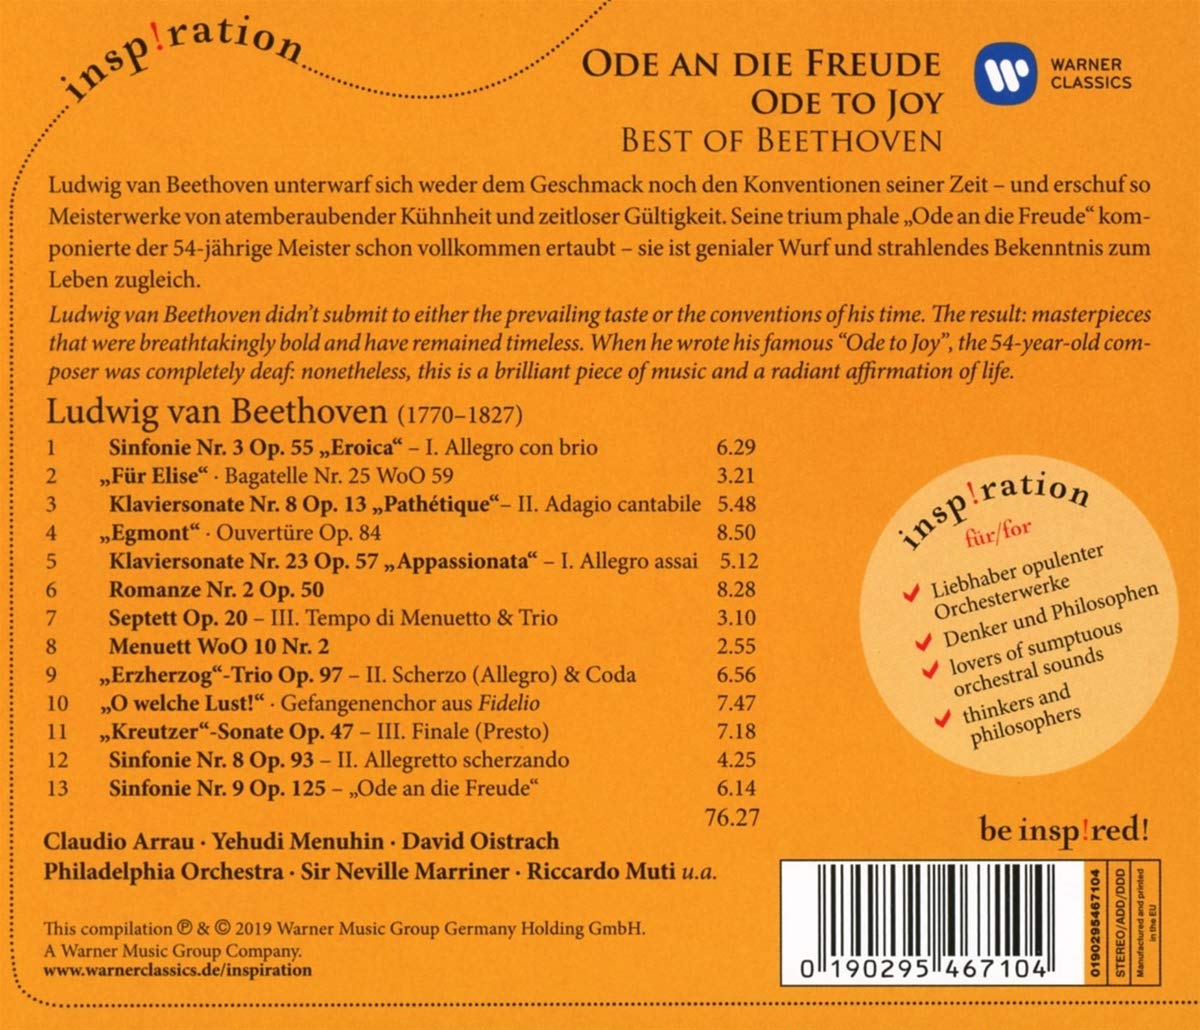 Claudio Arrau 인스피레이션 - 베스트 베토벤 (Ode an die Freude - Best of Beethoven)